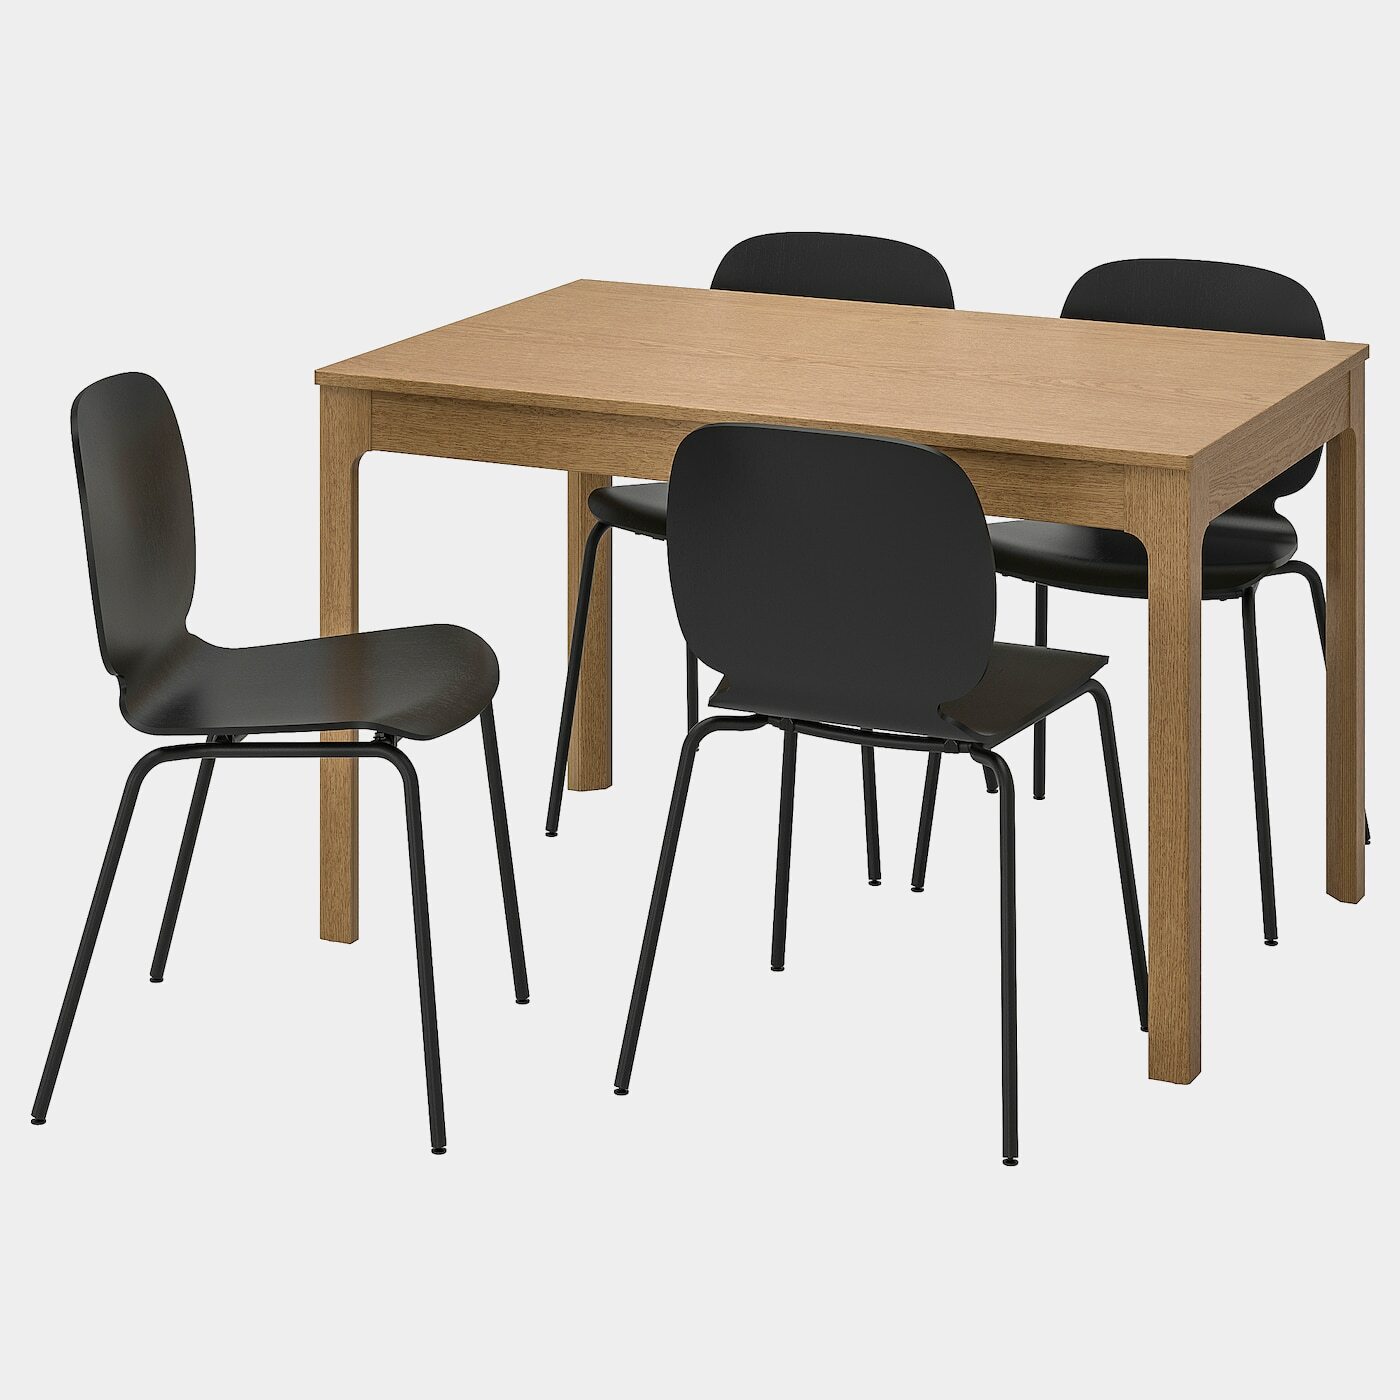 EKEDALEN / SVENBERTIL Tisch und 4 Stühle  - Essplatzgruppe - Möbel Ideen für dein Zuhause von Home Trends. Möbel Trends von Social Media Influencer für dein Skandi Zuhause.